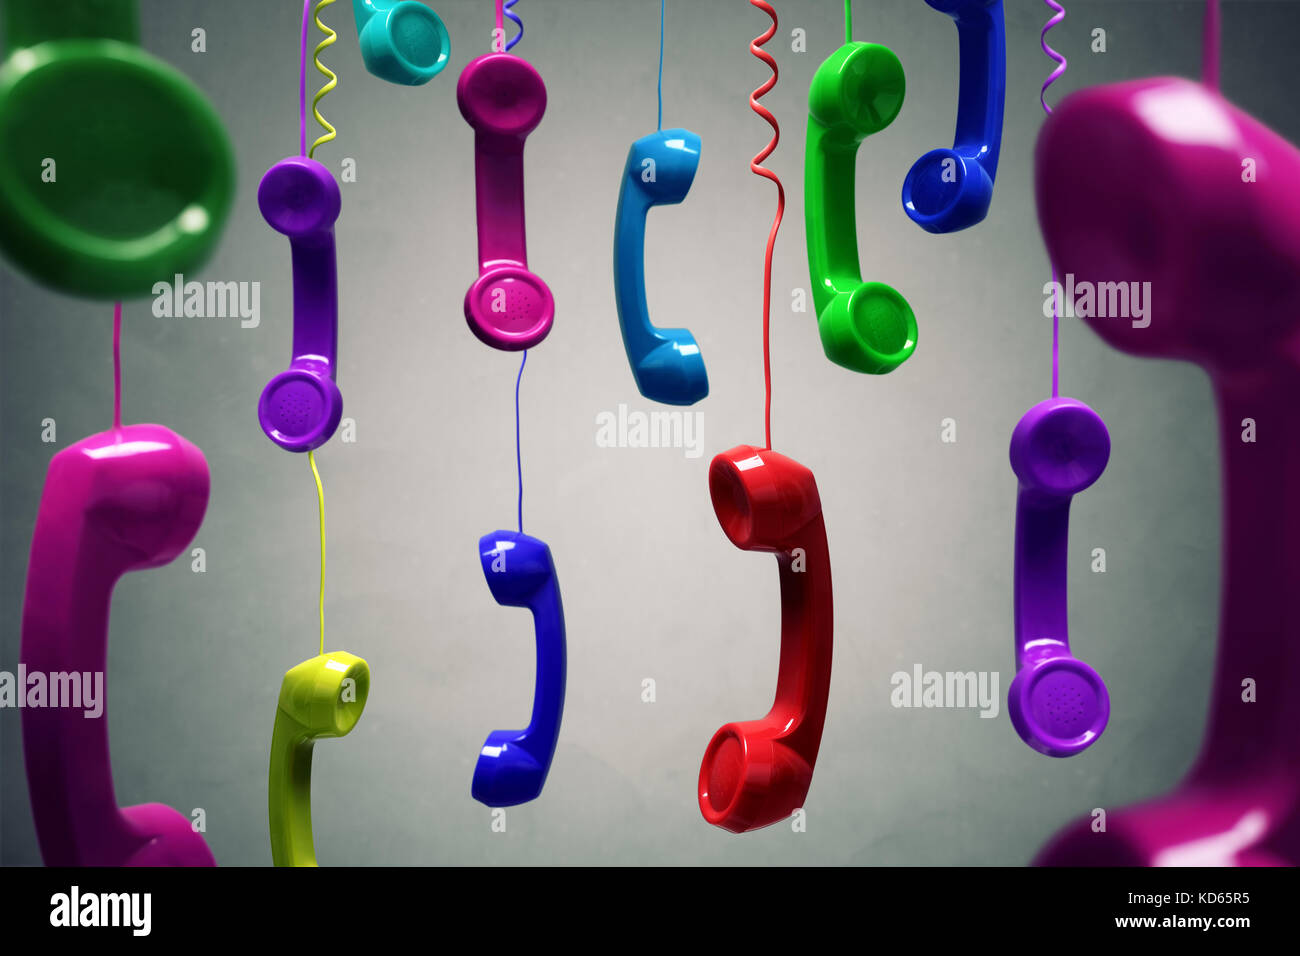 Rosso e multi-colore ricevitore telefonico appesa sopra lo sfondo grigio concetto per il telefono, servizio clienti in attesa o contattaci Foto Stock